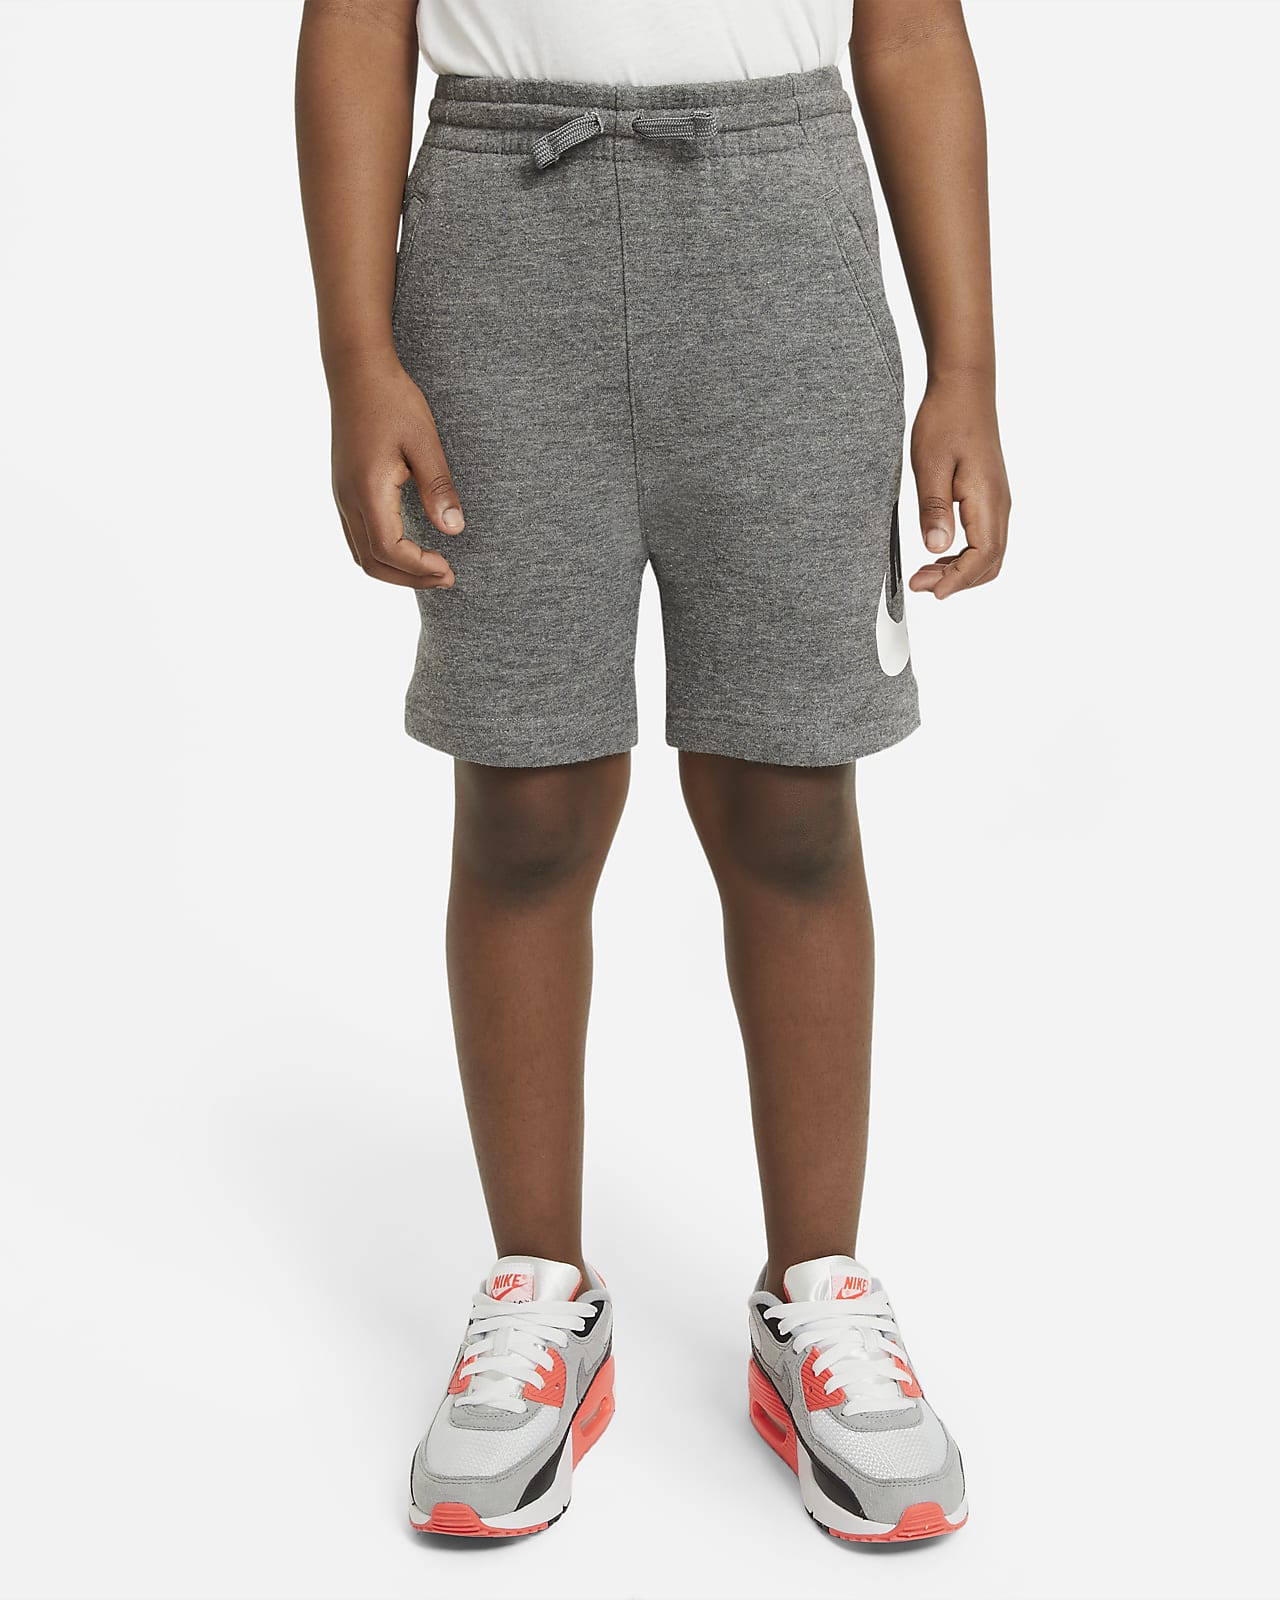 Shorts Nike för barn